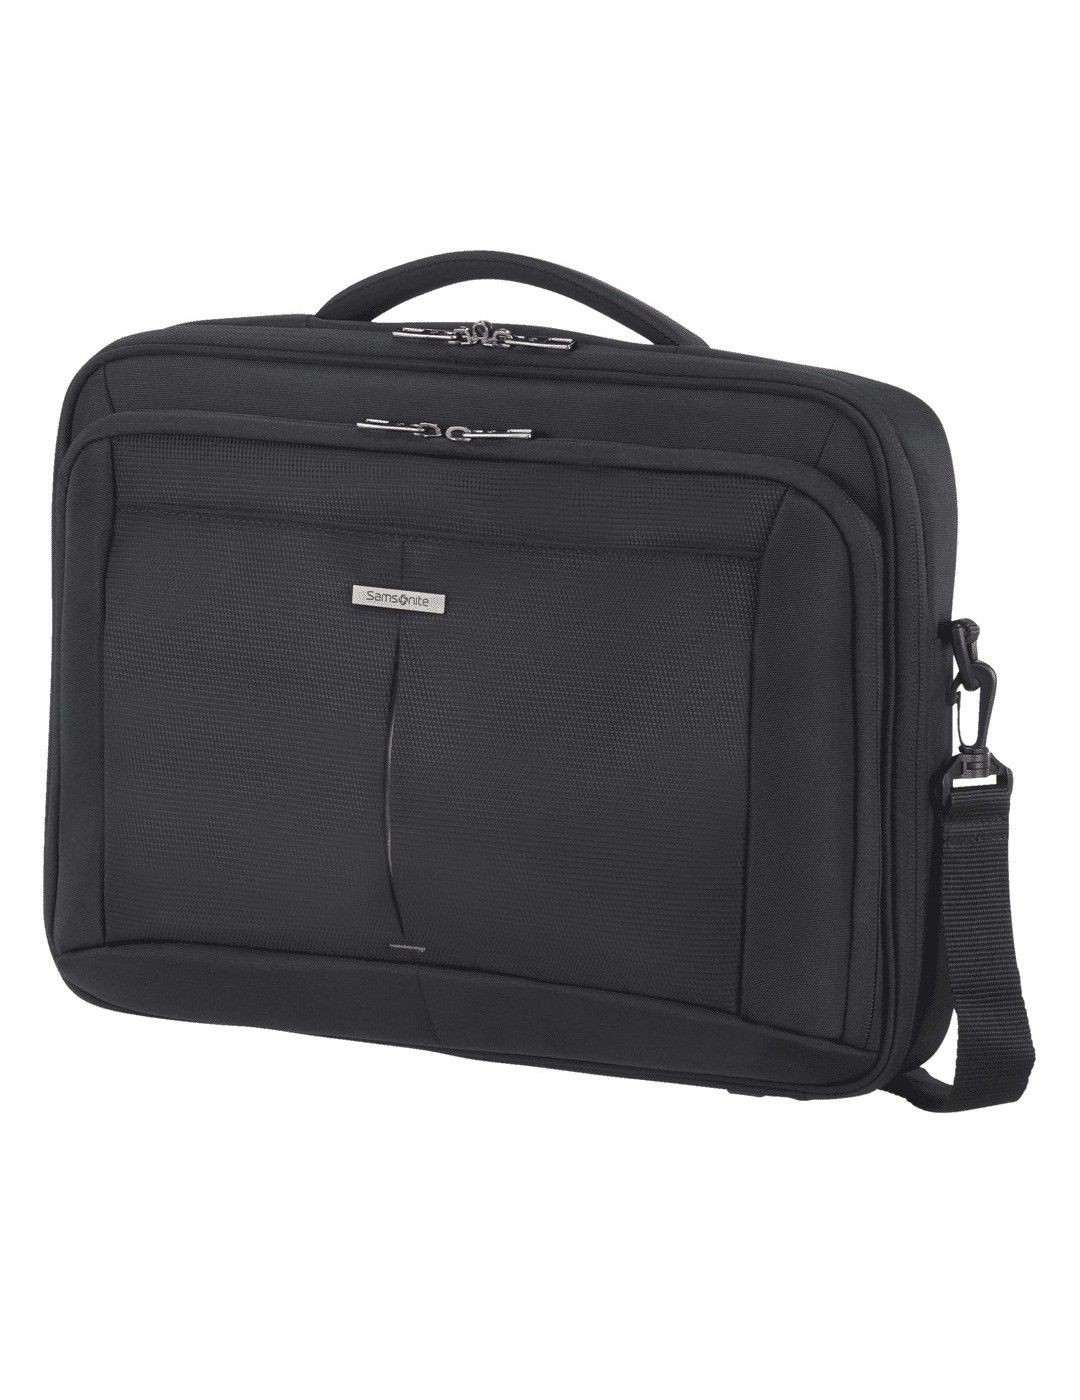 Samsonite Guardit 2 laptop bag 15.6 inches